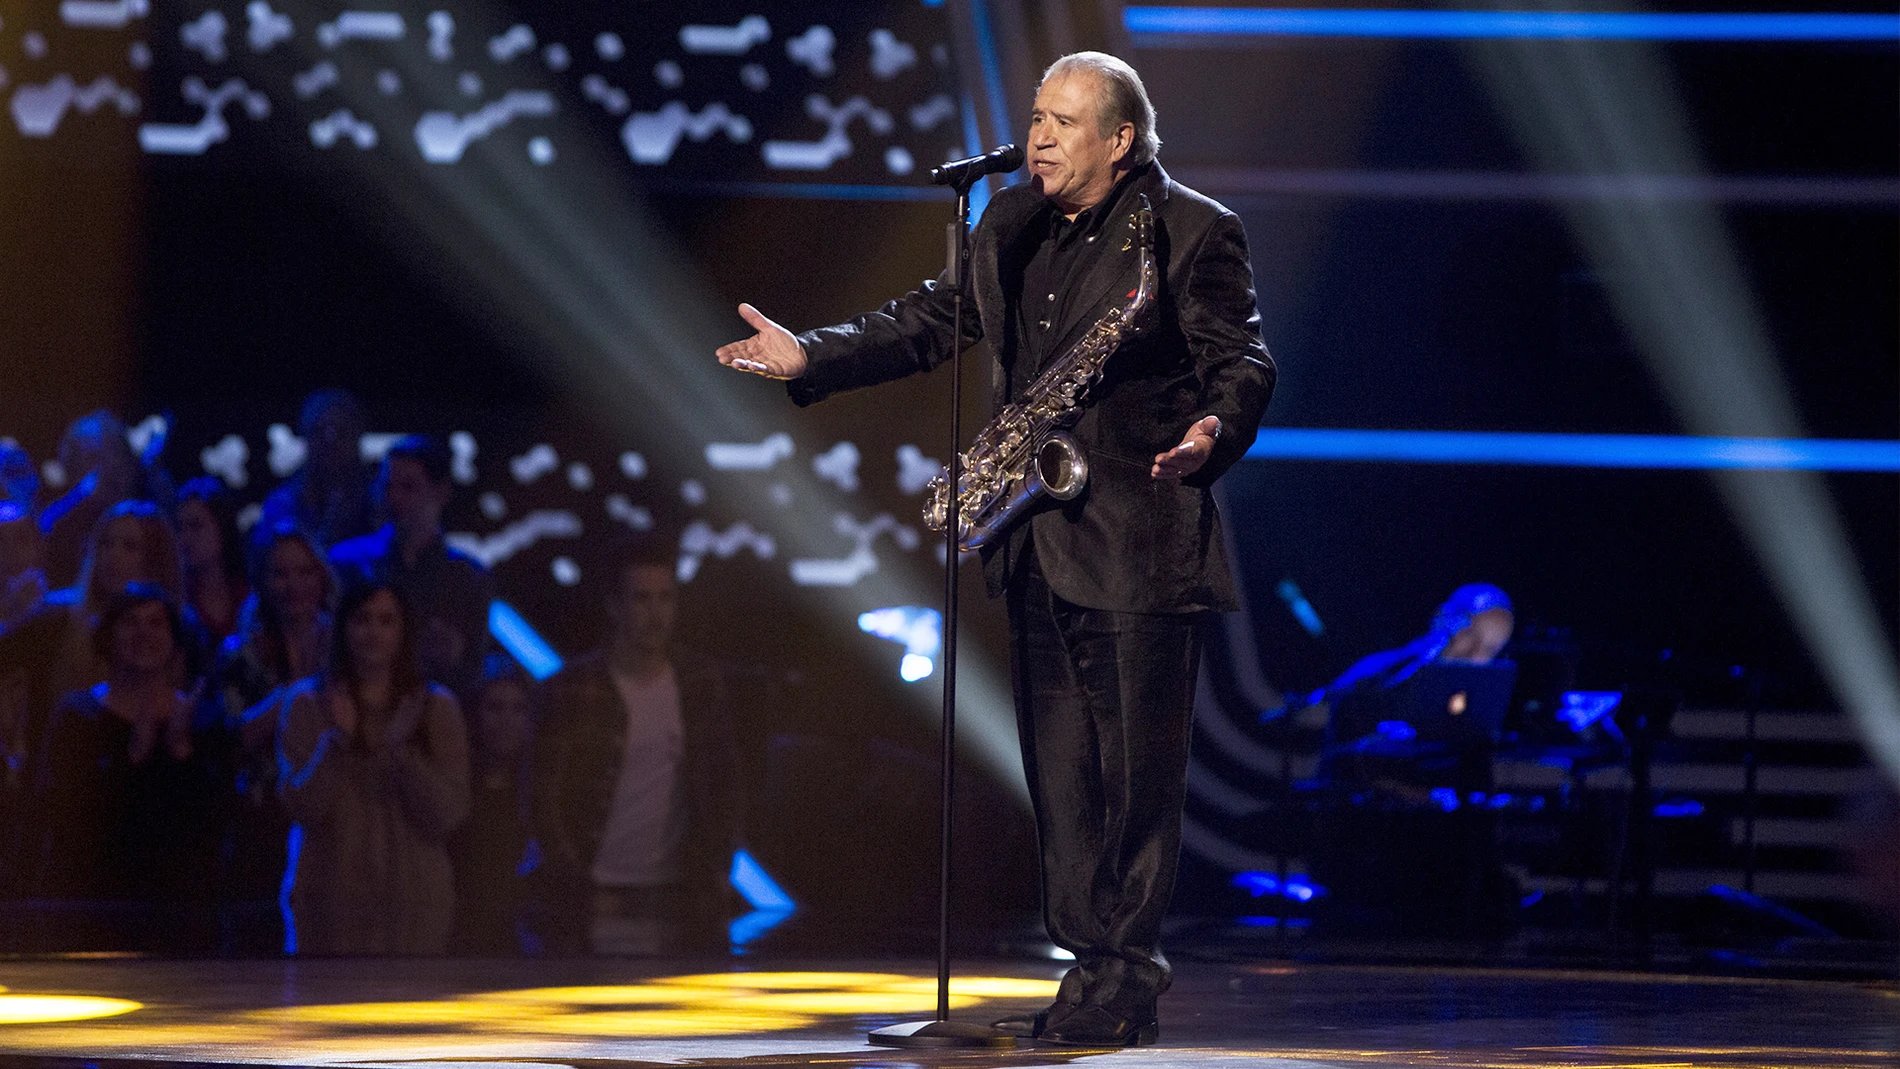 Juan Mena canta ‘Cómo fue’ en las Audiciones a ciegas de ‘La Voz Senior’